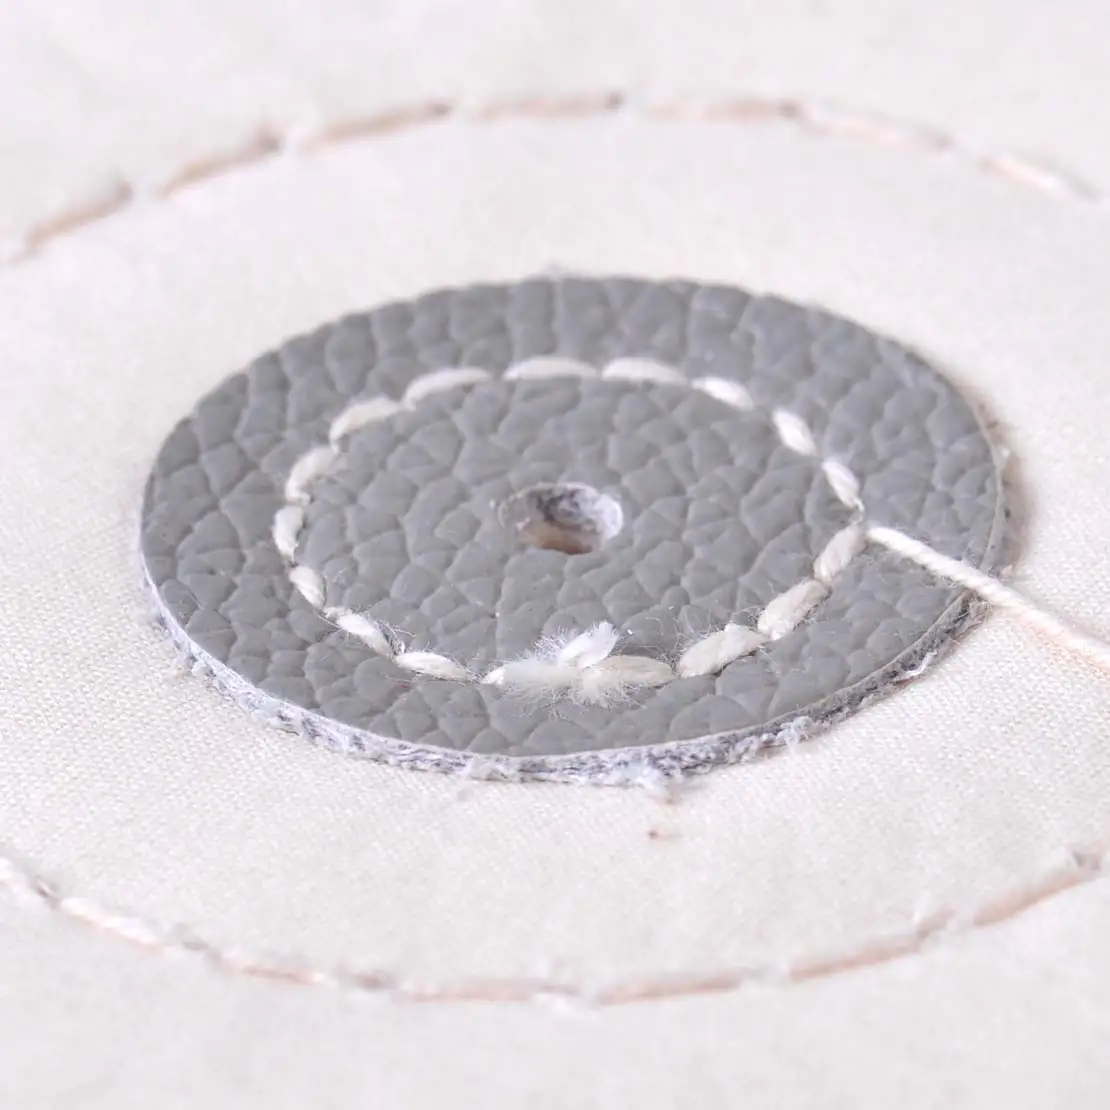 LETAOSK Новая мягкая хлопковая ткань Арбор отверстие Полировка Шлифовка насадка в форме круга белая круглая мельница